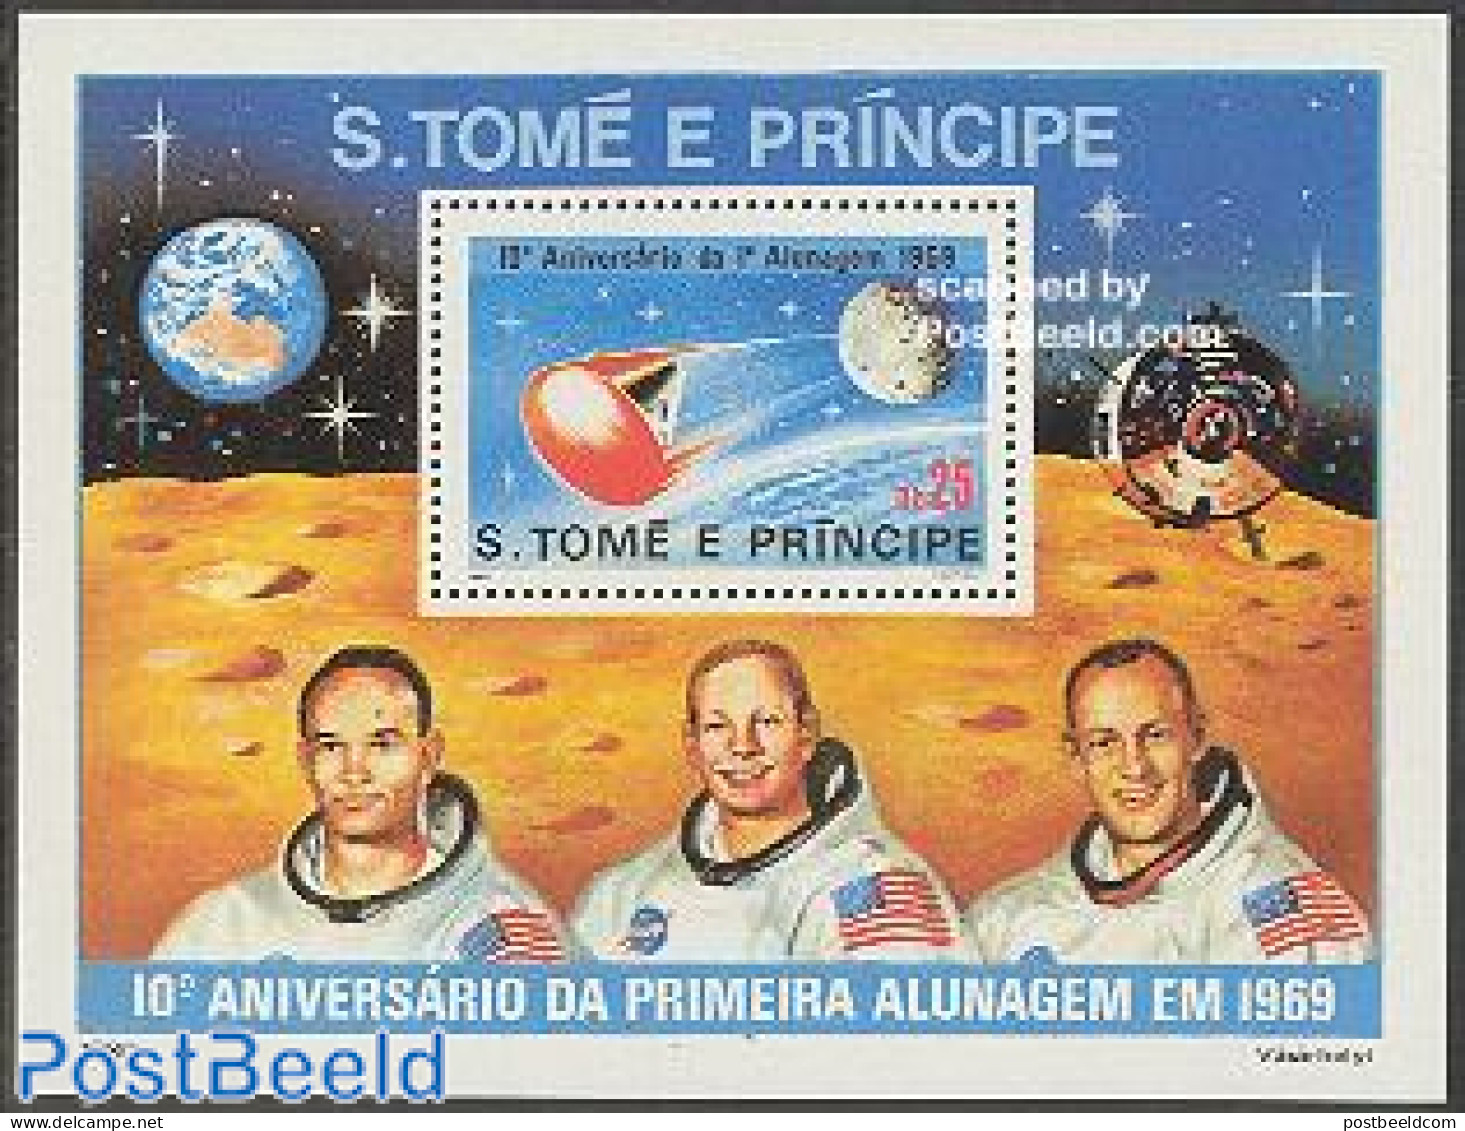 Sao Tome/Principe 1980 Moonlanding S/s, Mint NH, Transport - Space Exploration - São Tomé Und Príncipe